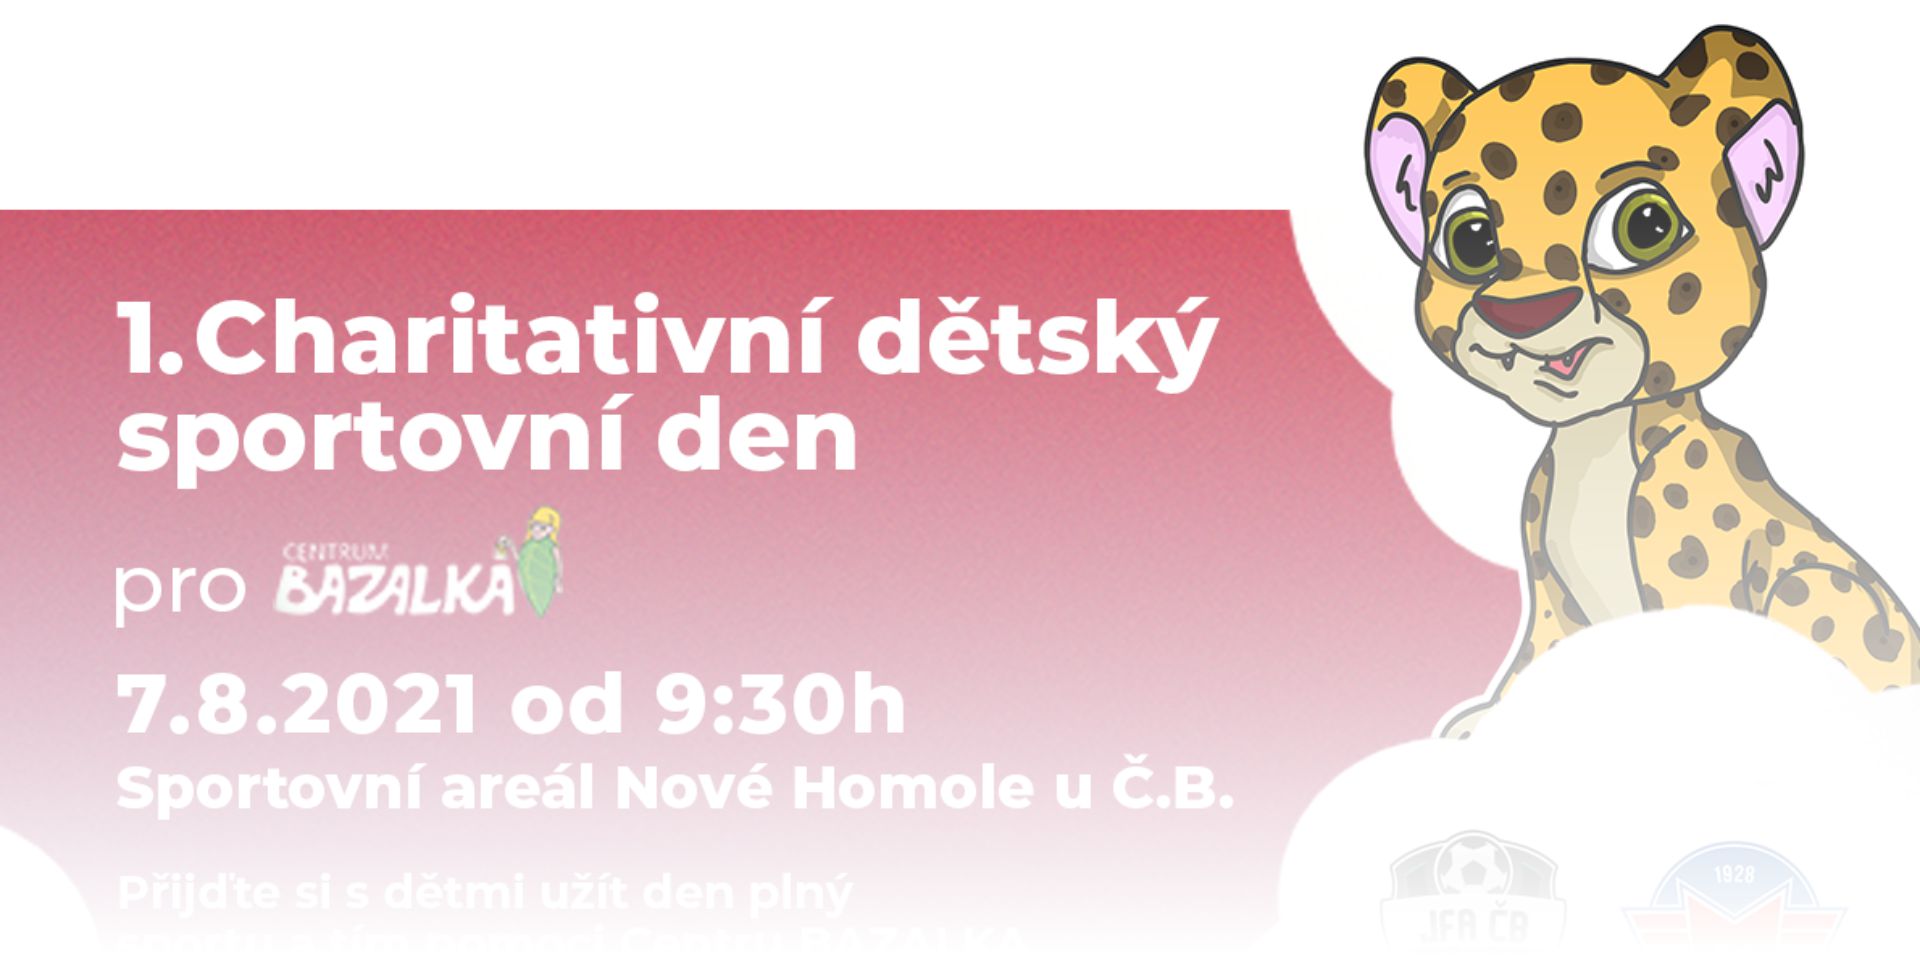 1. charitativní dětský sportovní den pro Cetrum BAZALKA